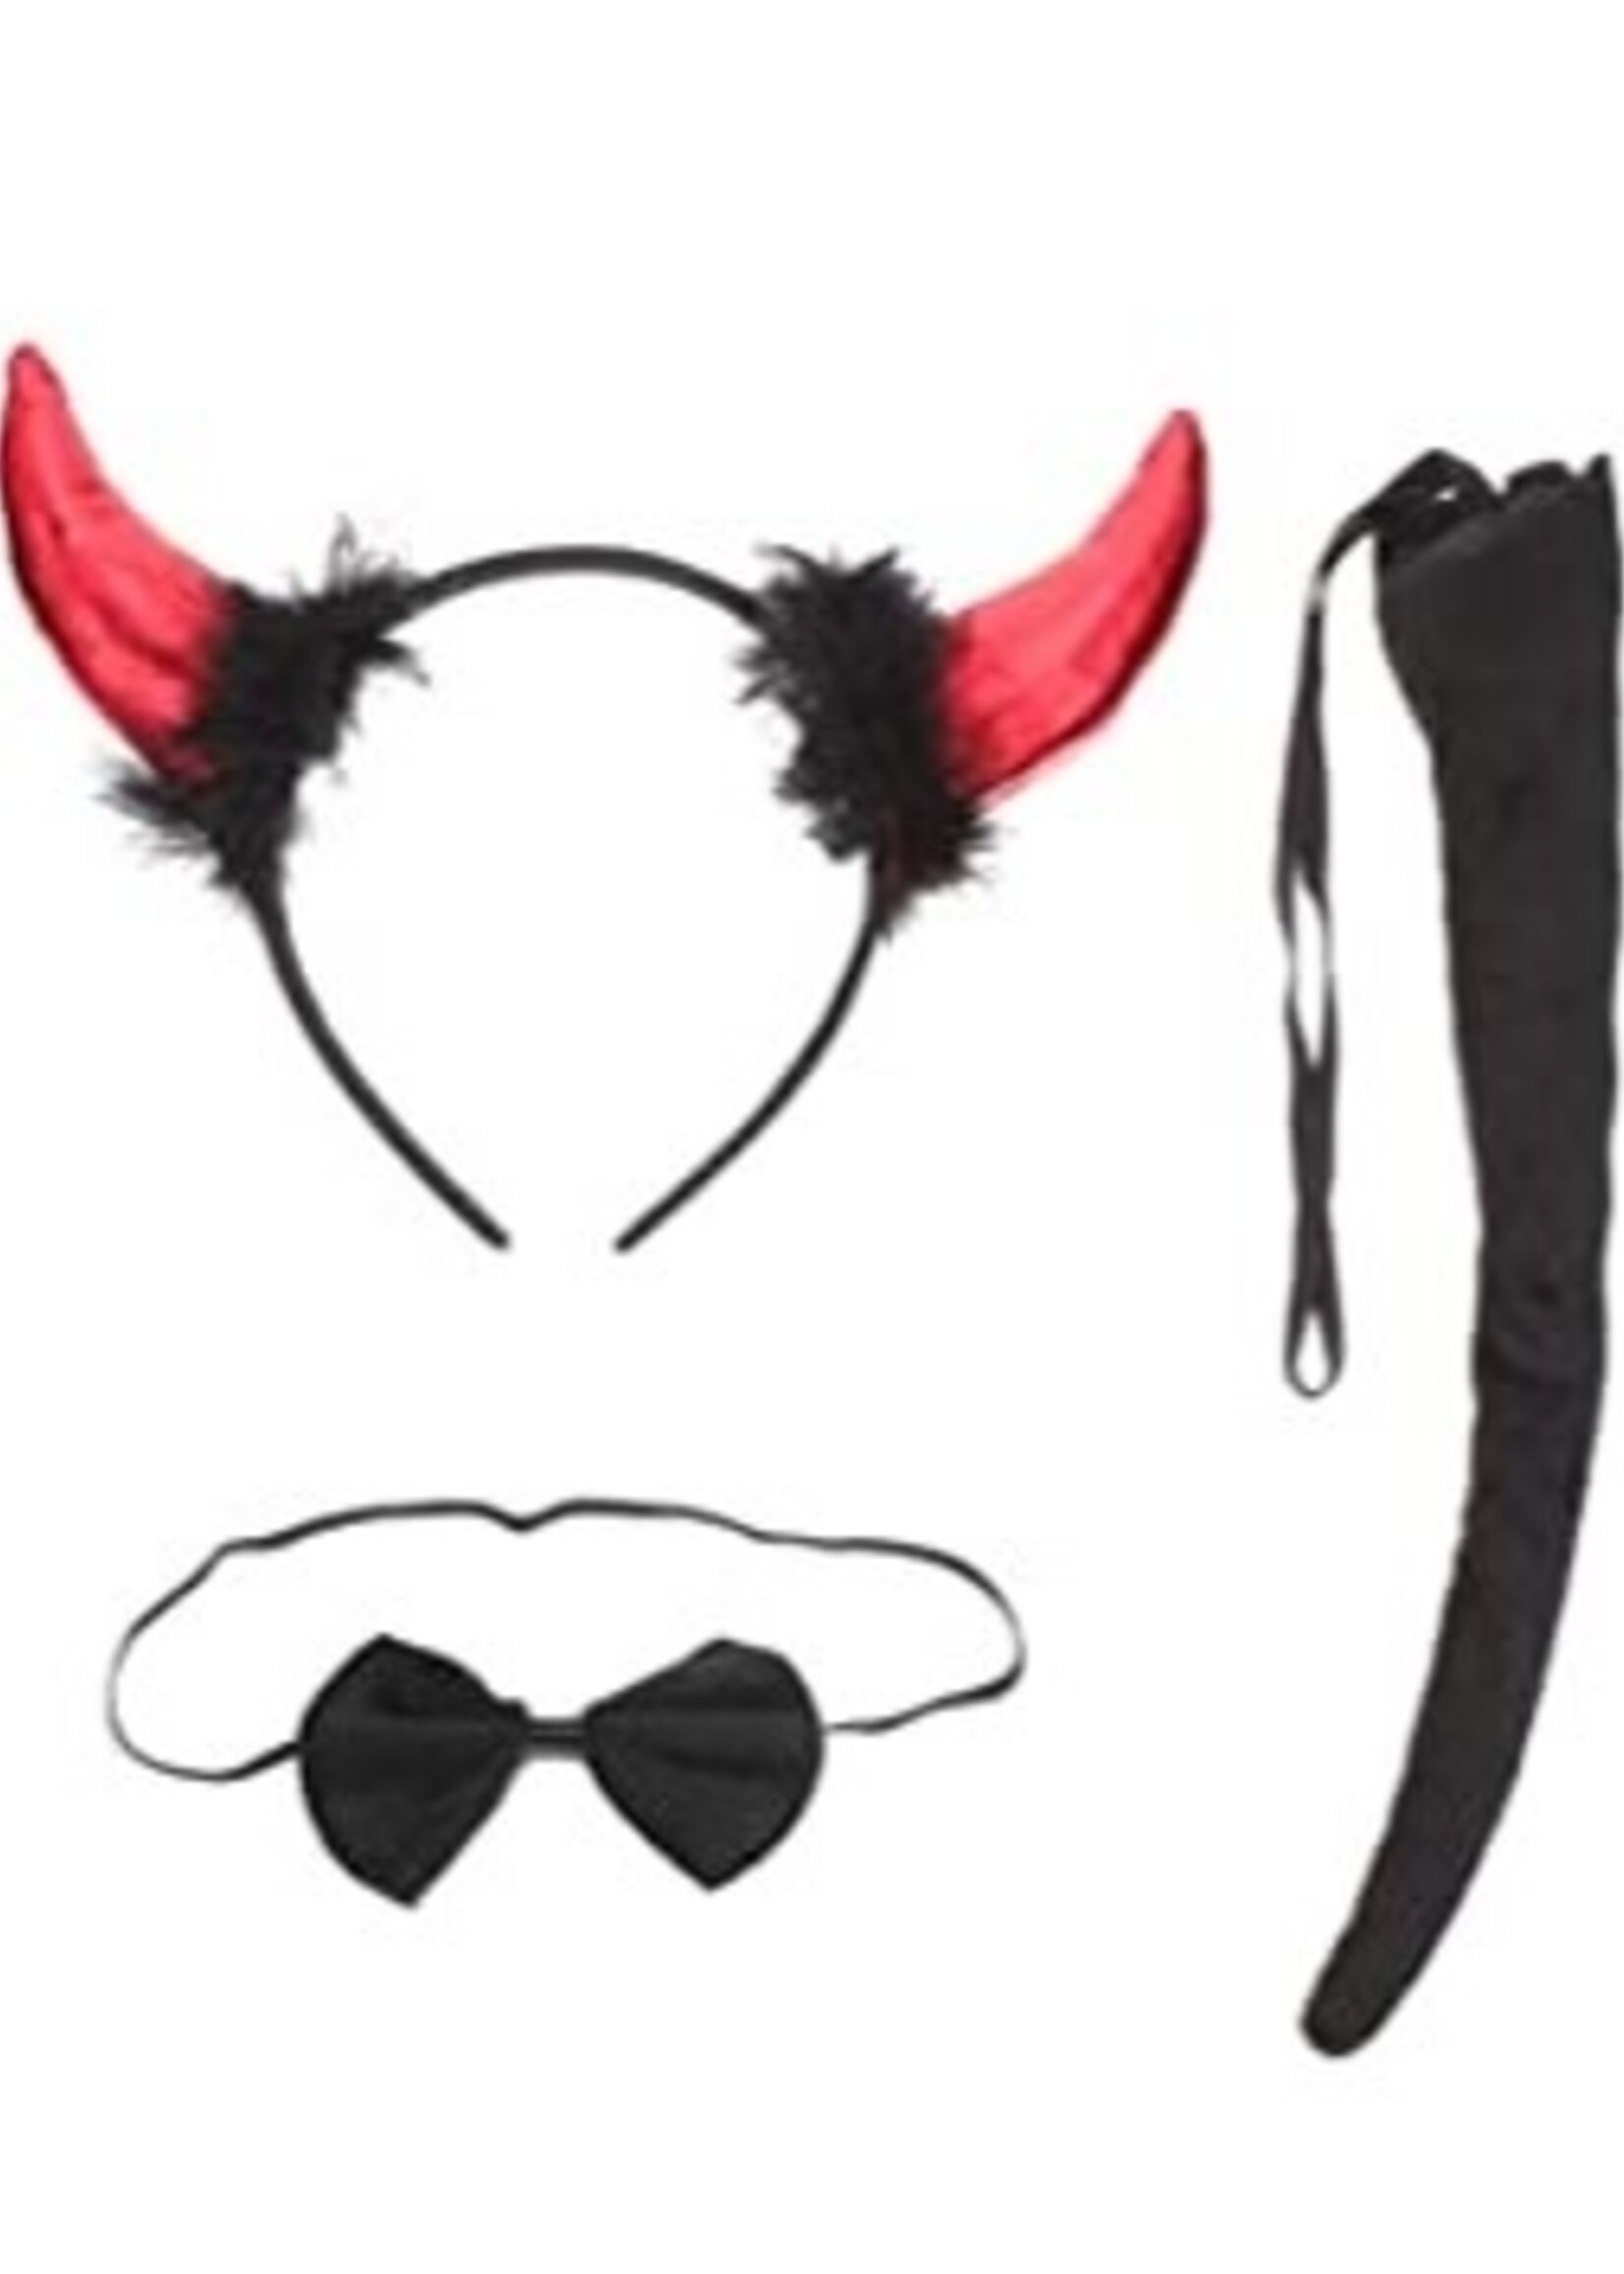 Devil Horn Headband & Tail